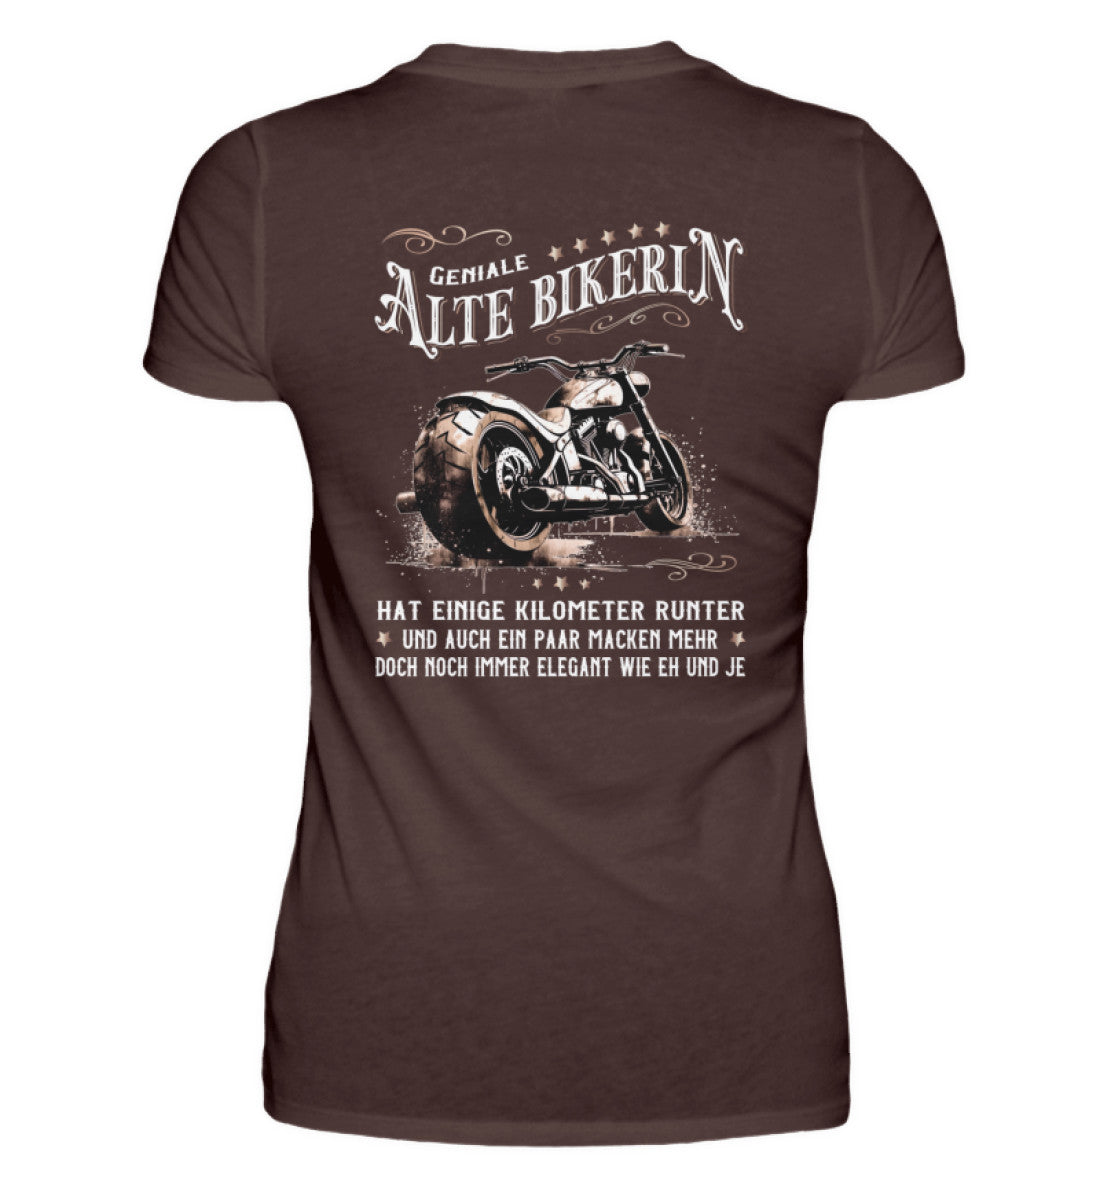 Ein Bikerin T-Shirt für Motorradfahrerinnen von Wingbikers mit dem Aufdruck, Alte Bikerin - Einige Kilometer Runter - Doch elegant wie eh und je - mit Back Print, in braun.